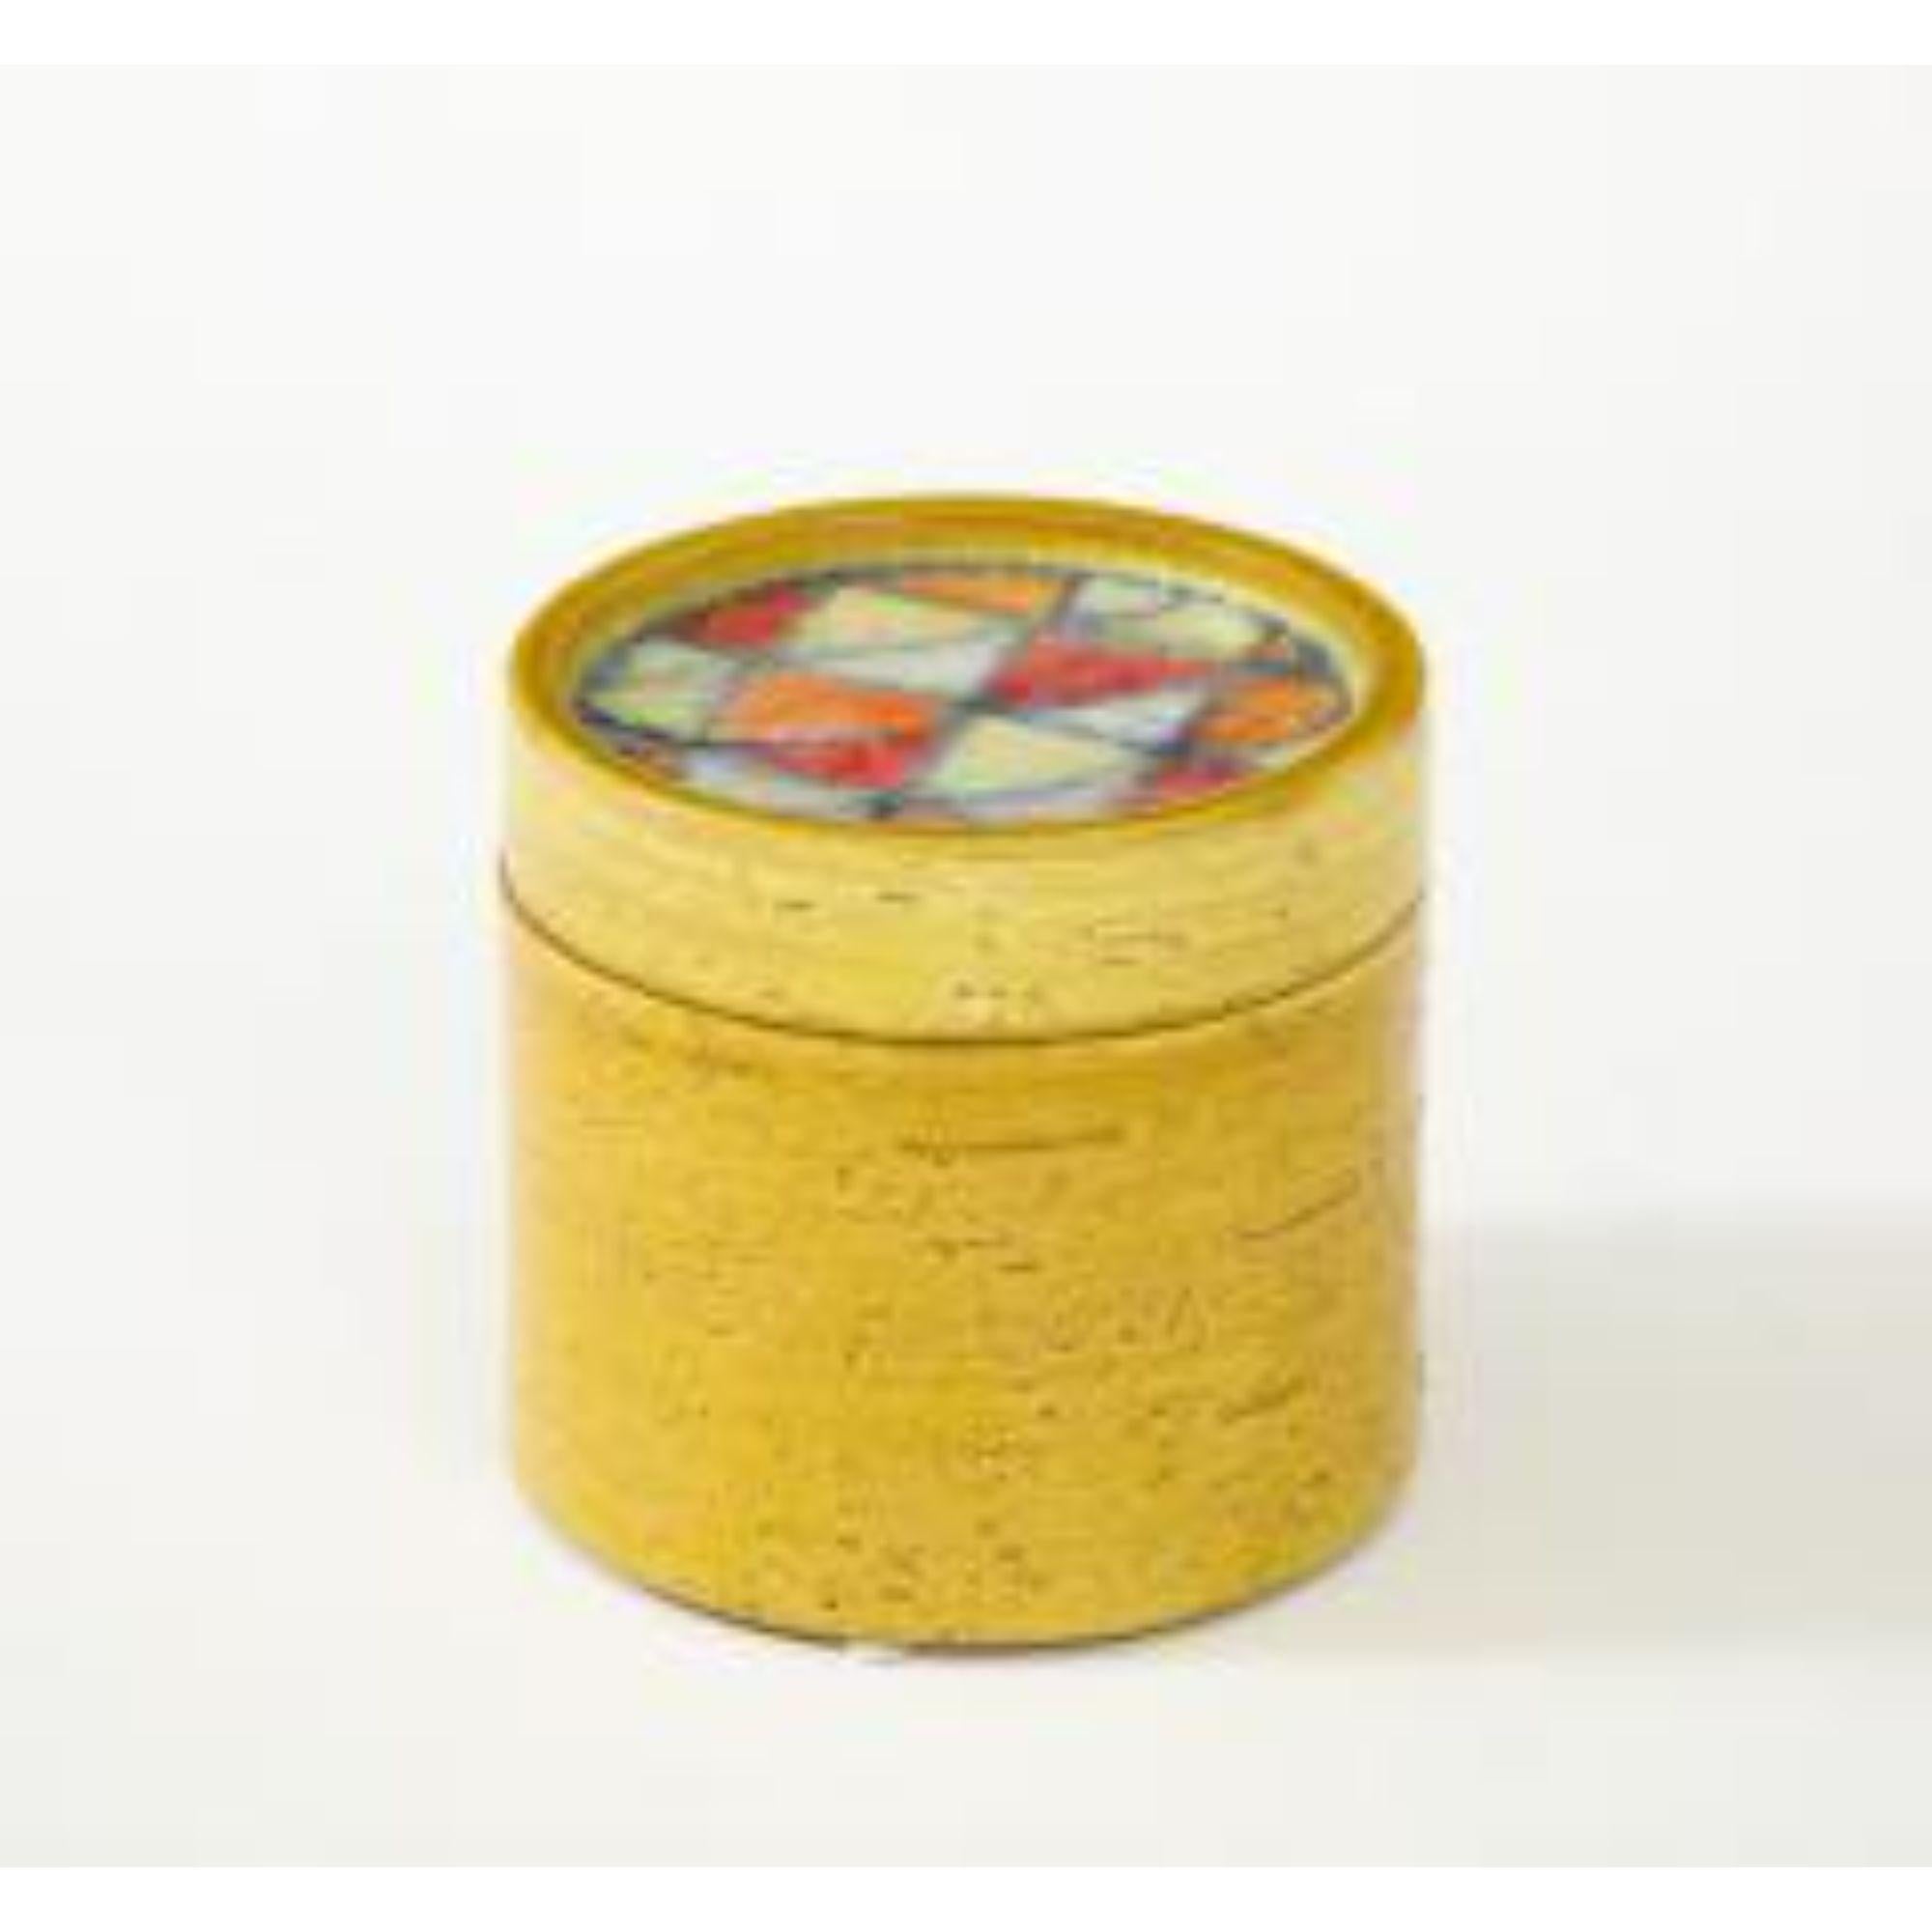 Boîte à couvercle en céramique émaillée avec mosaïque en verre fusionné, Italie, c. 1960s

Informations supplémentaires :
Matériaux : Céramique
Origine : Italie
Période : 1950-1979
Date de création : C.I.C.
Styles / Mouvements :